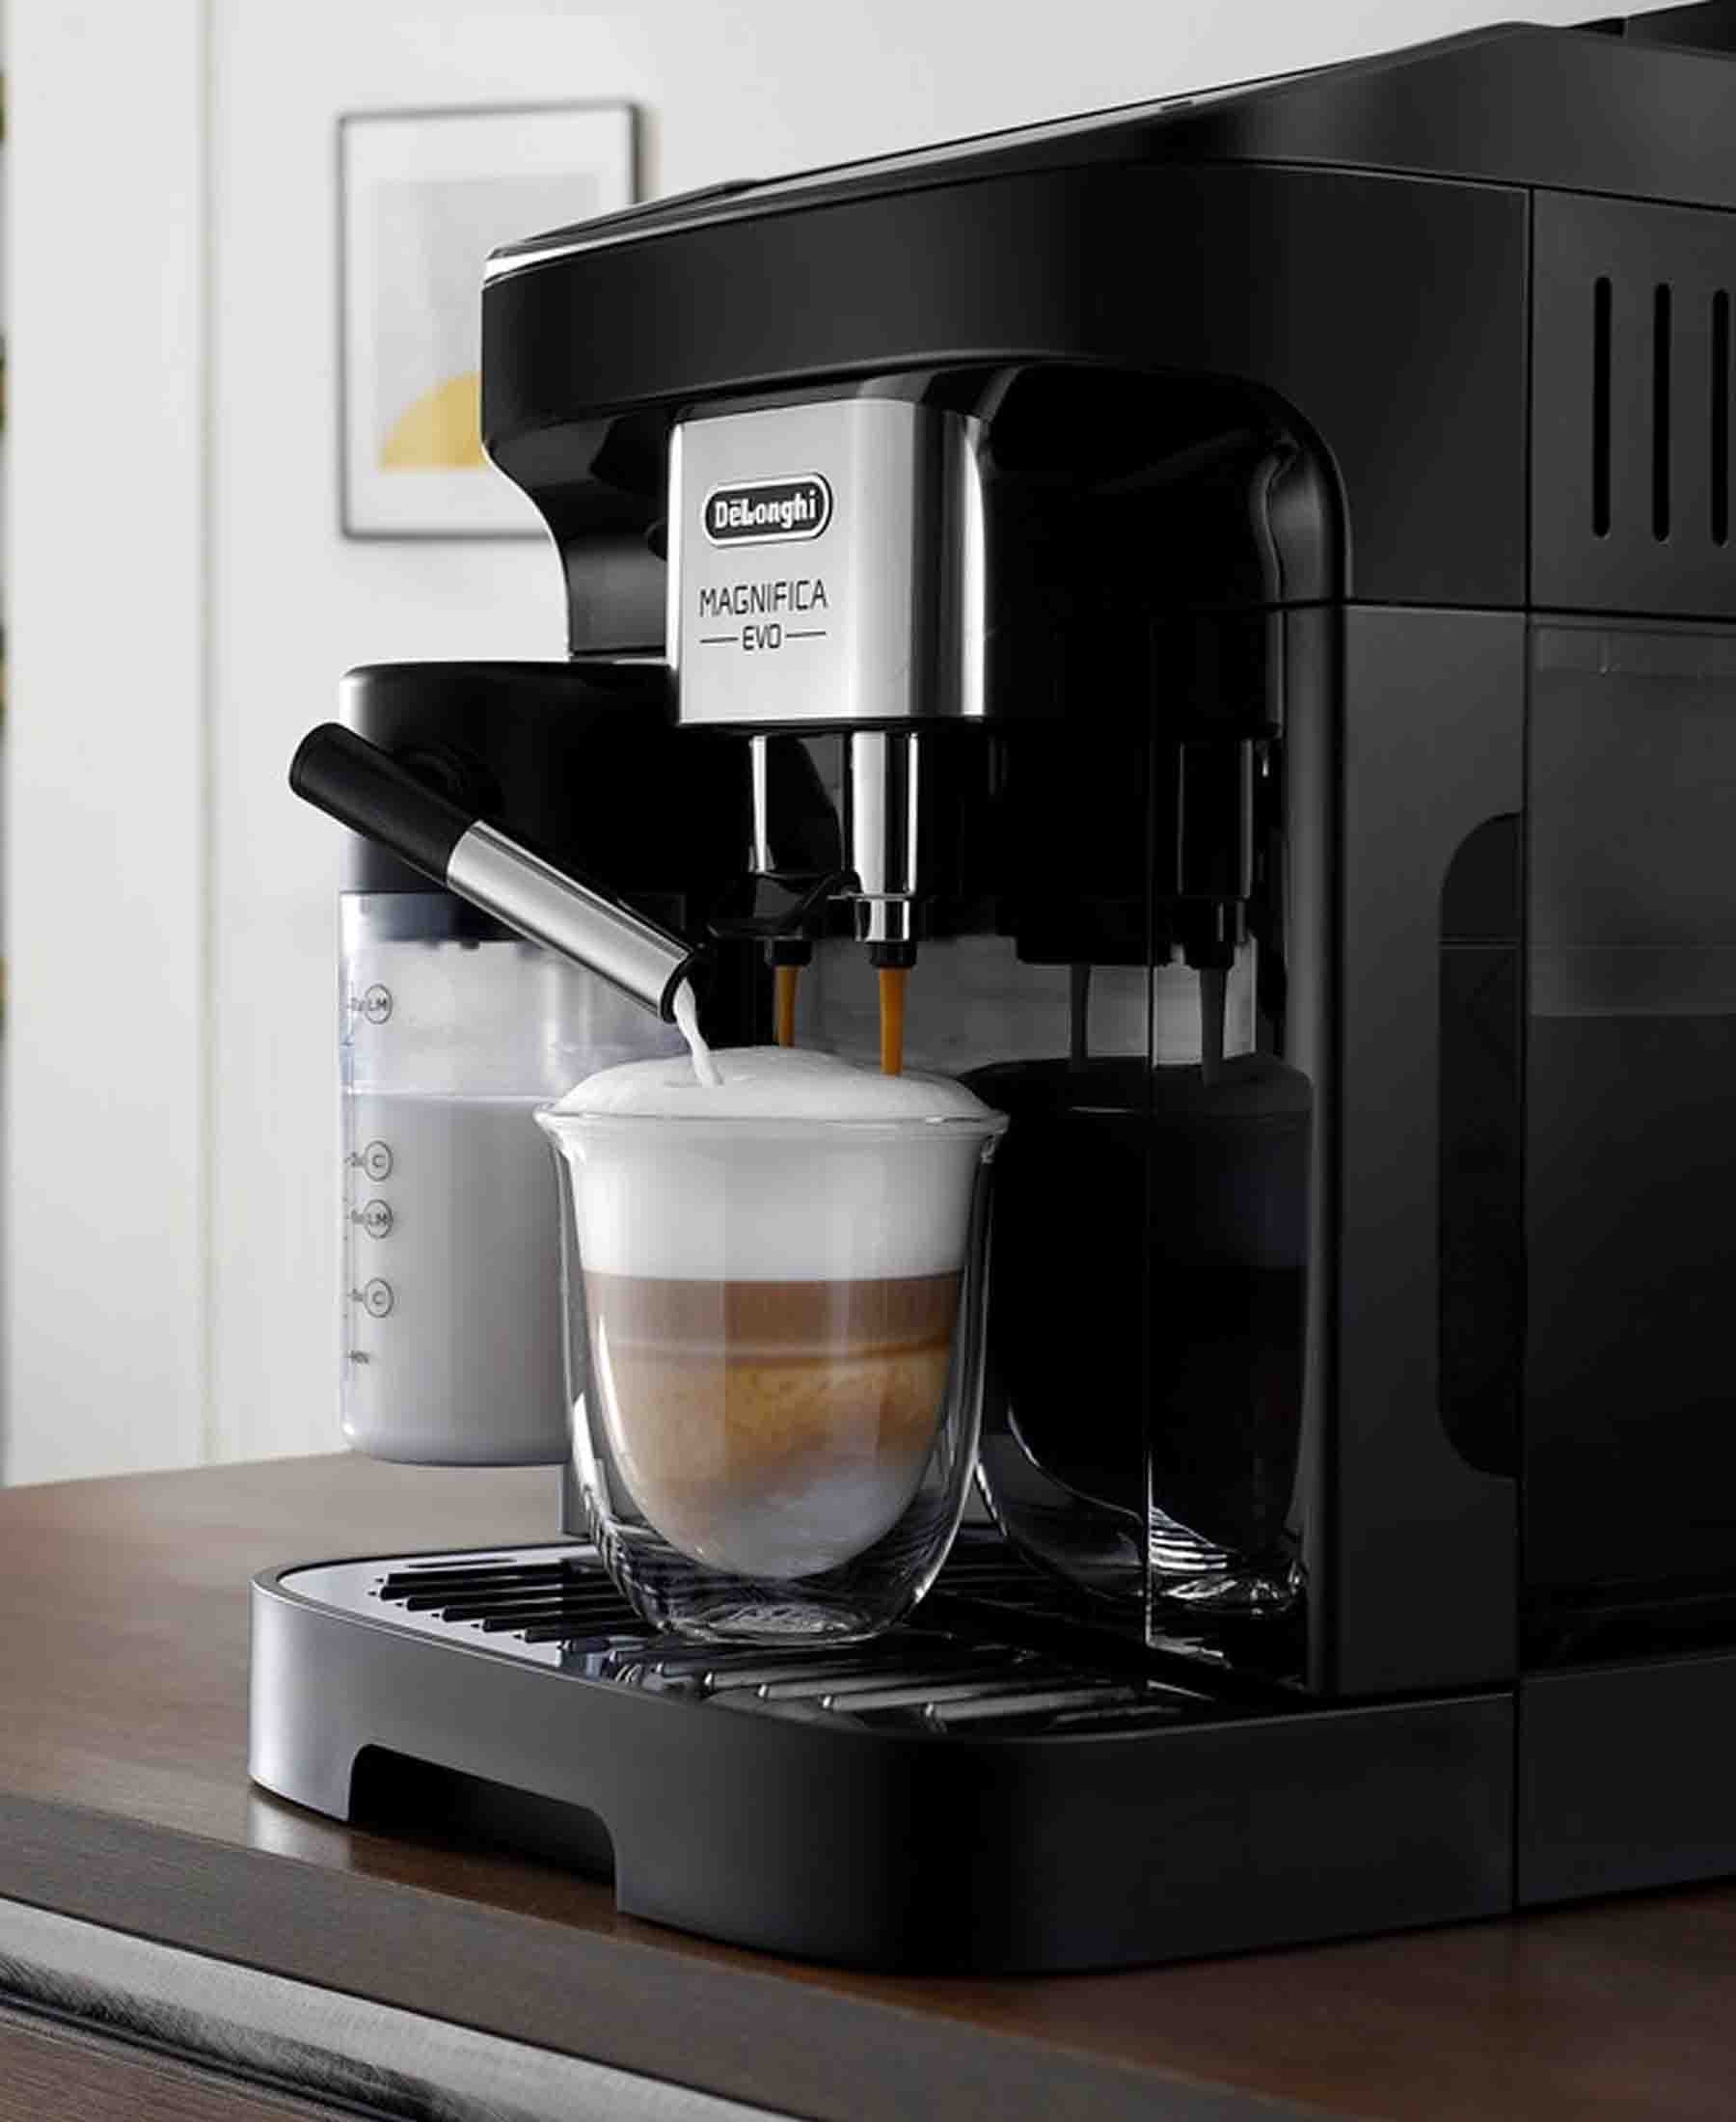 DeLonghi Magnifica Evo Automatic Coffee Maker - Black – The Culinarium